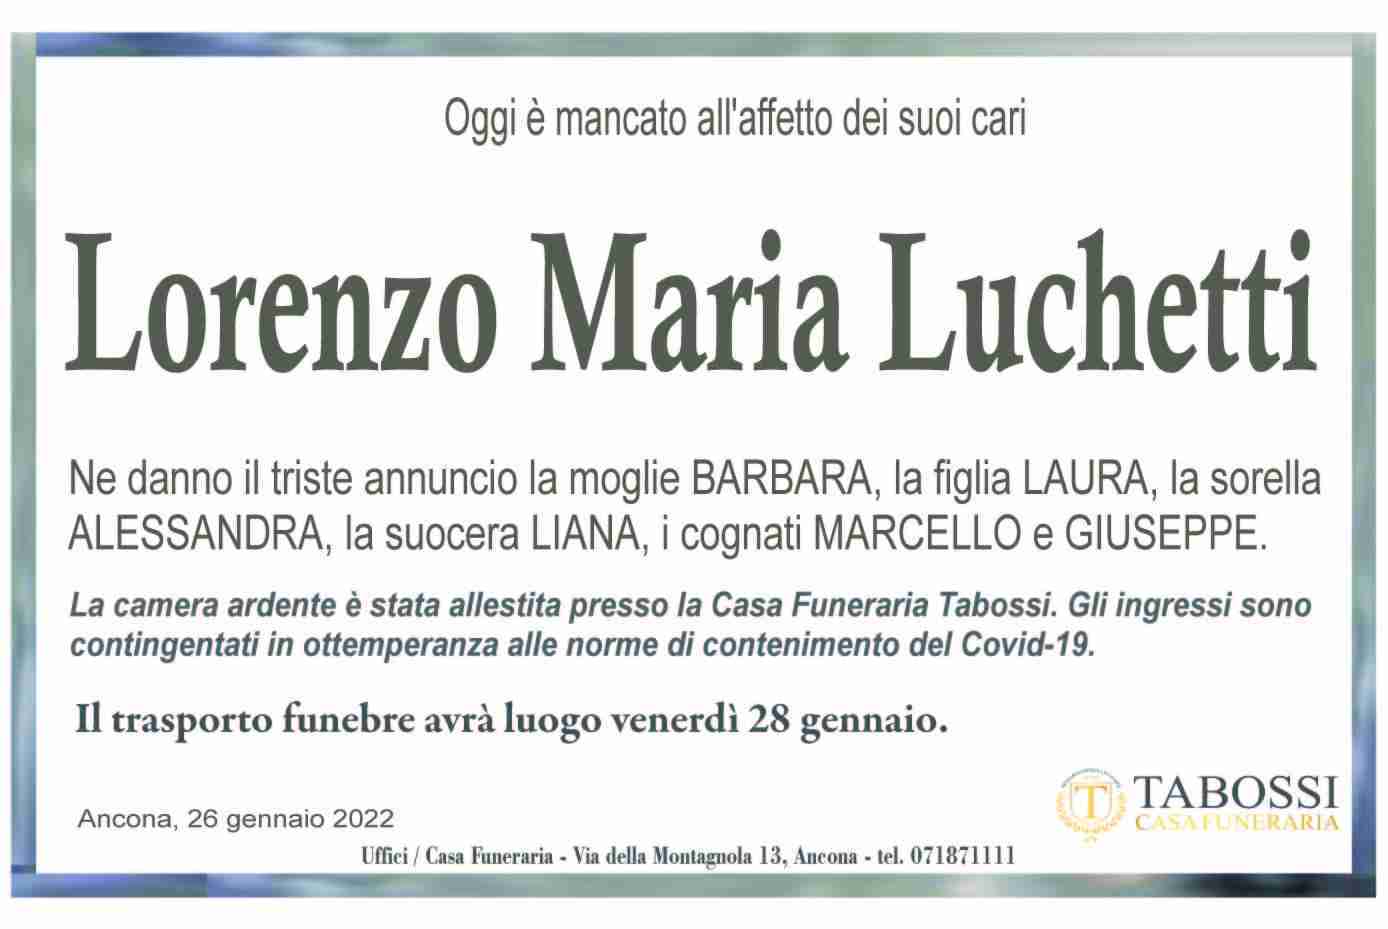 Lorenzo Maria Luchetti